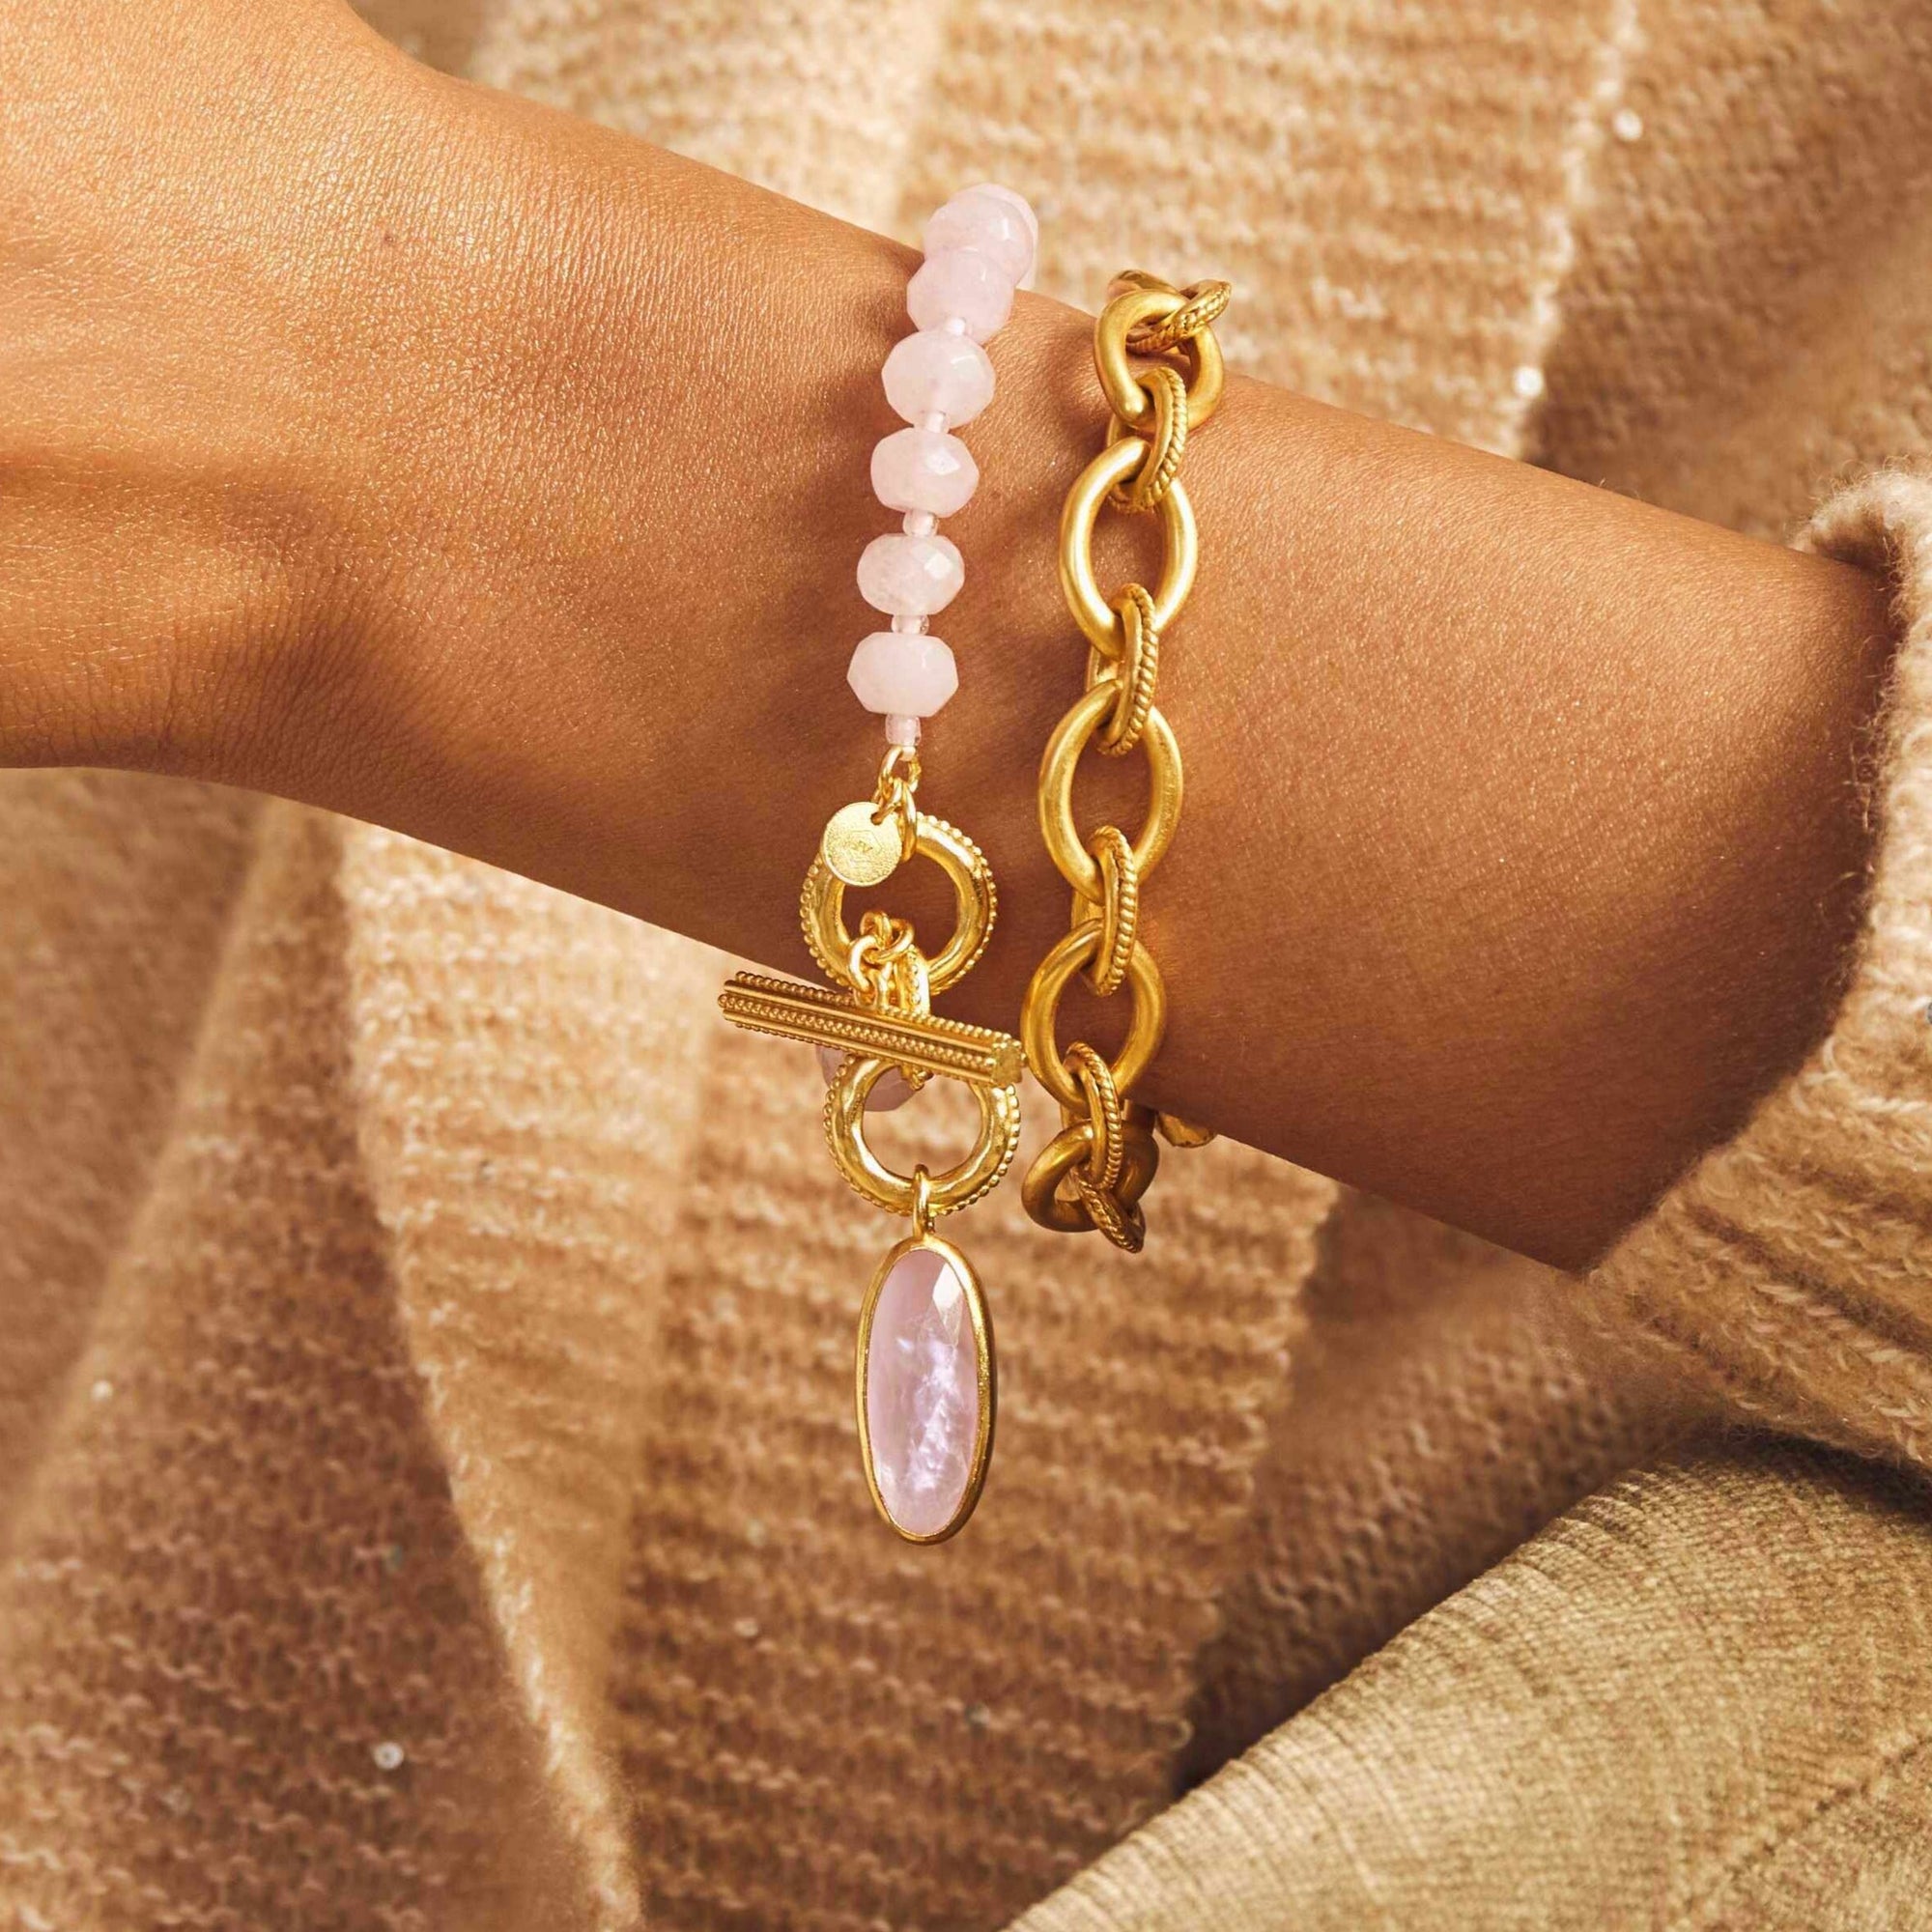 Dress Choice Pink Hearts Bracelet Glass Beads Charm Bracelet